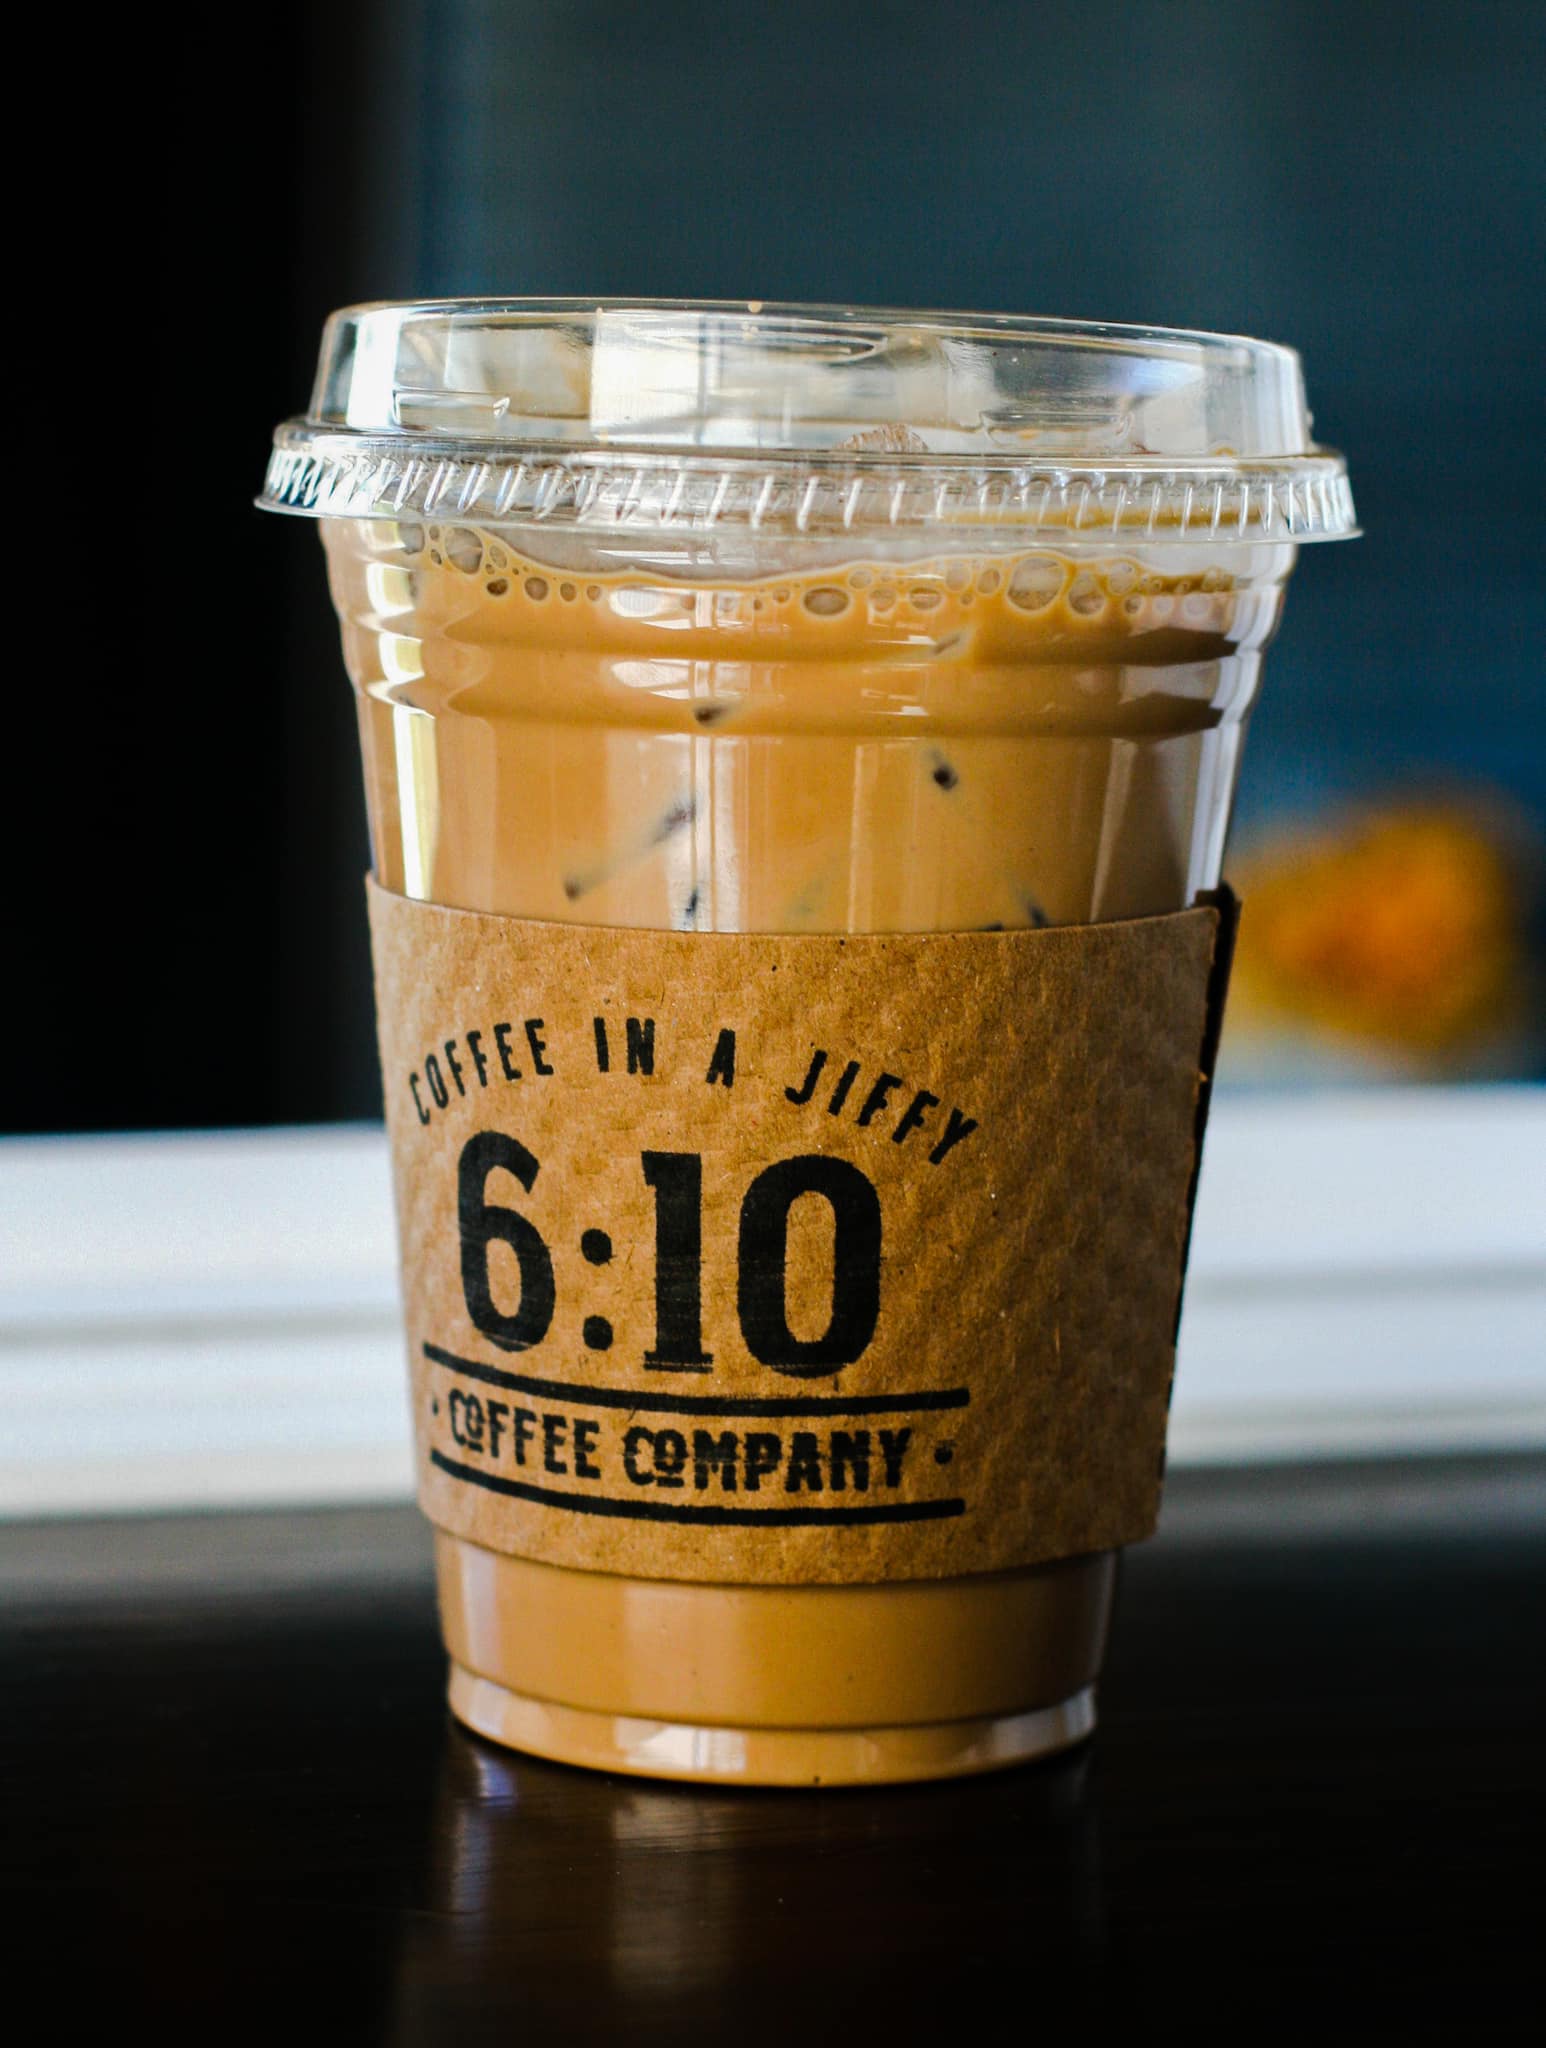 6:10 Coffee Company